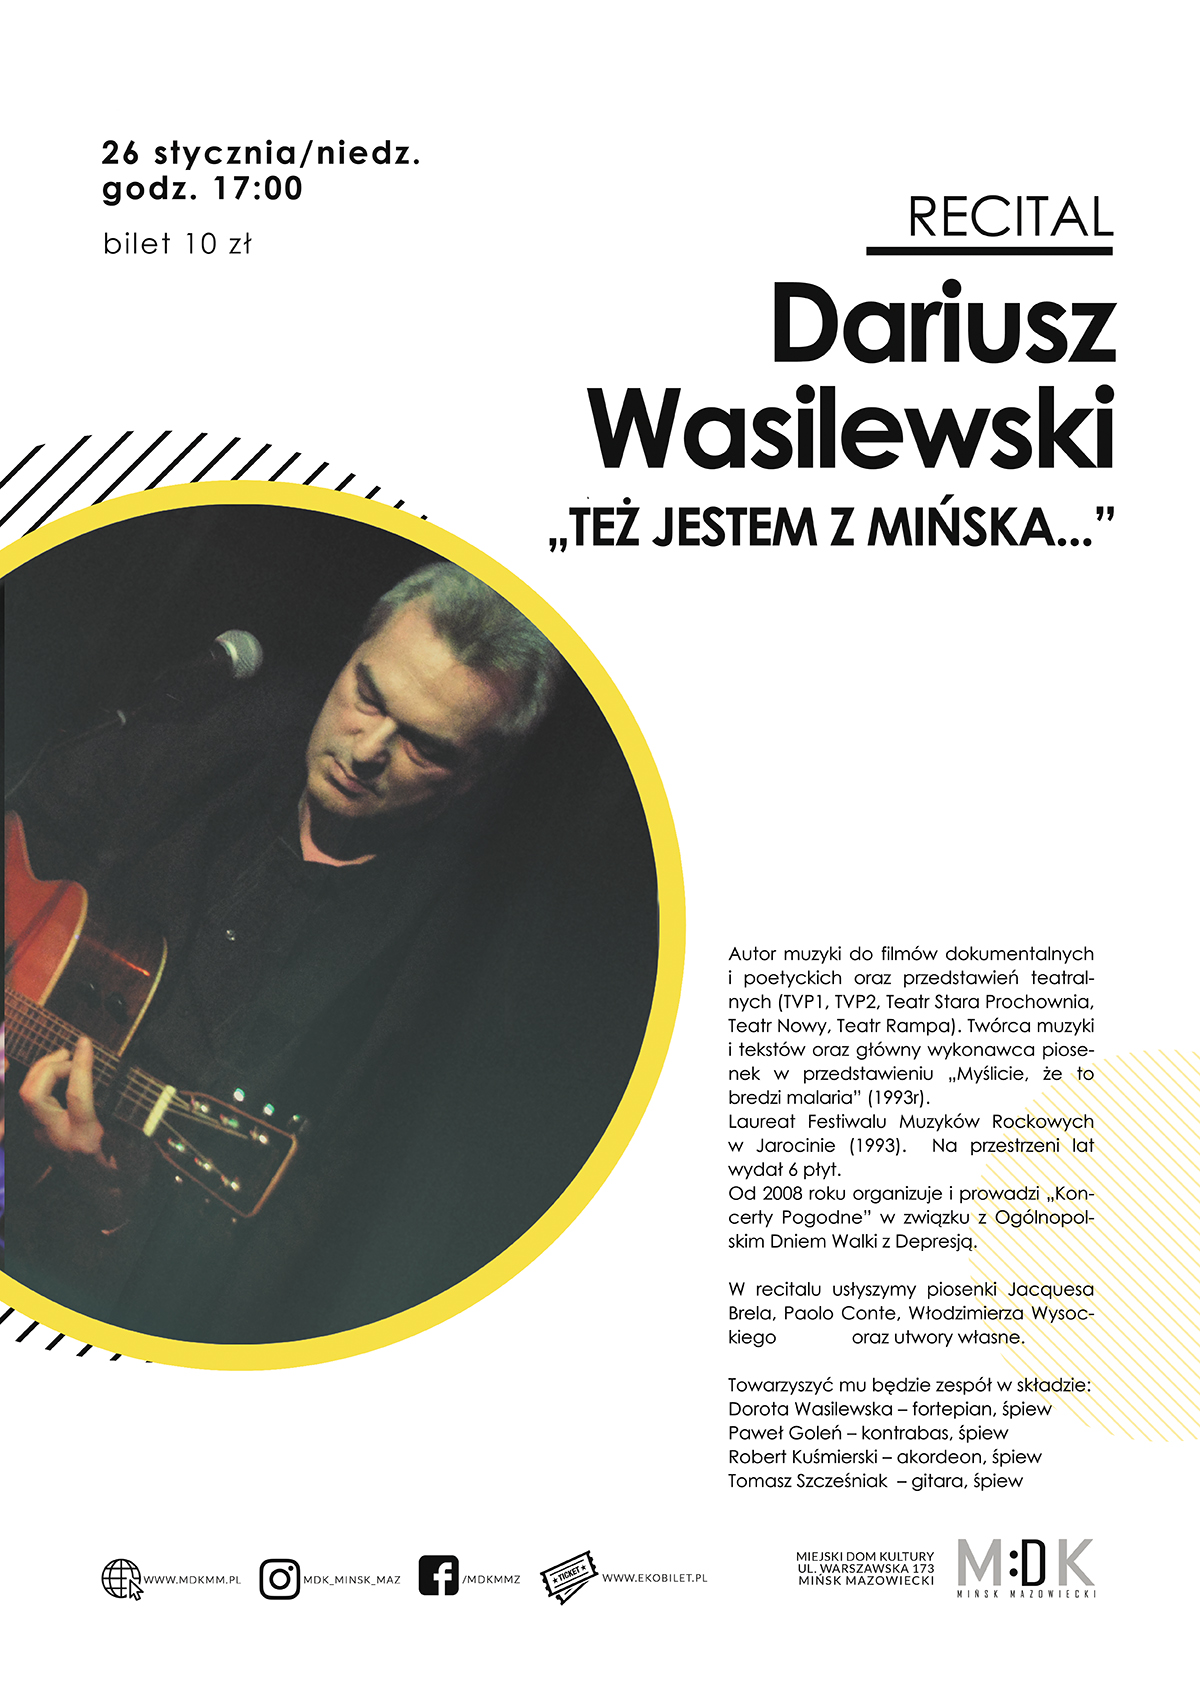 Dariusz Wasilewski "Też jestem z Mińska..." - recital